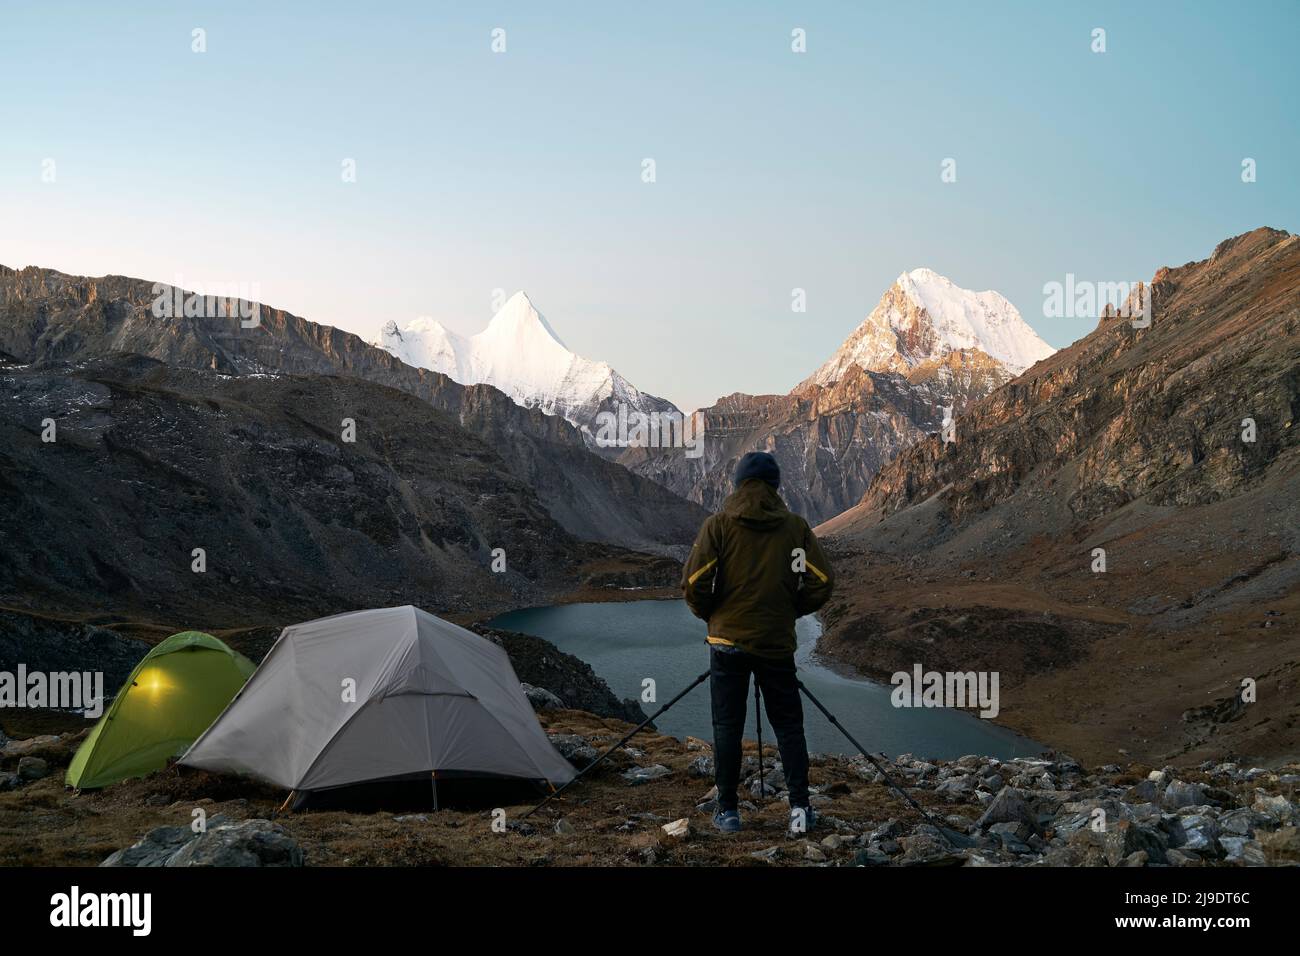 asiatischer Camper-Fotograf, der ein Bild von Berg und See im yading-Nationalpark, Bezirk daocheng, Provinz sichuan, china, macht Stockfoto